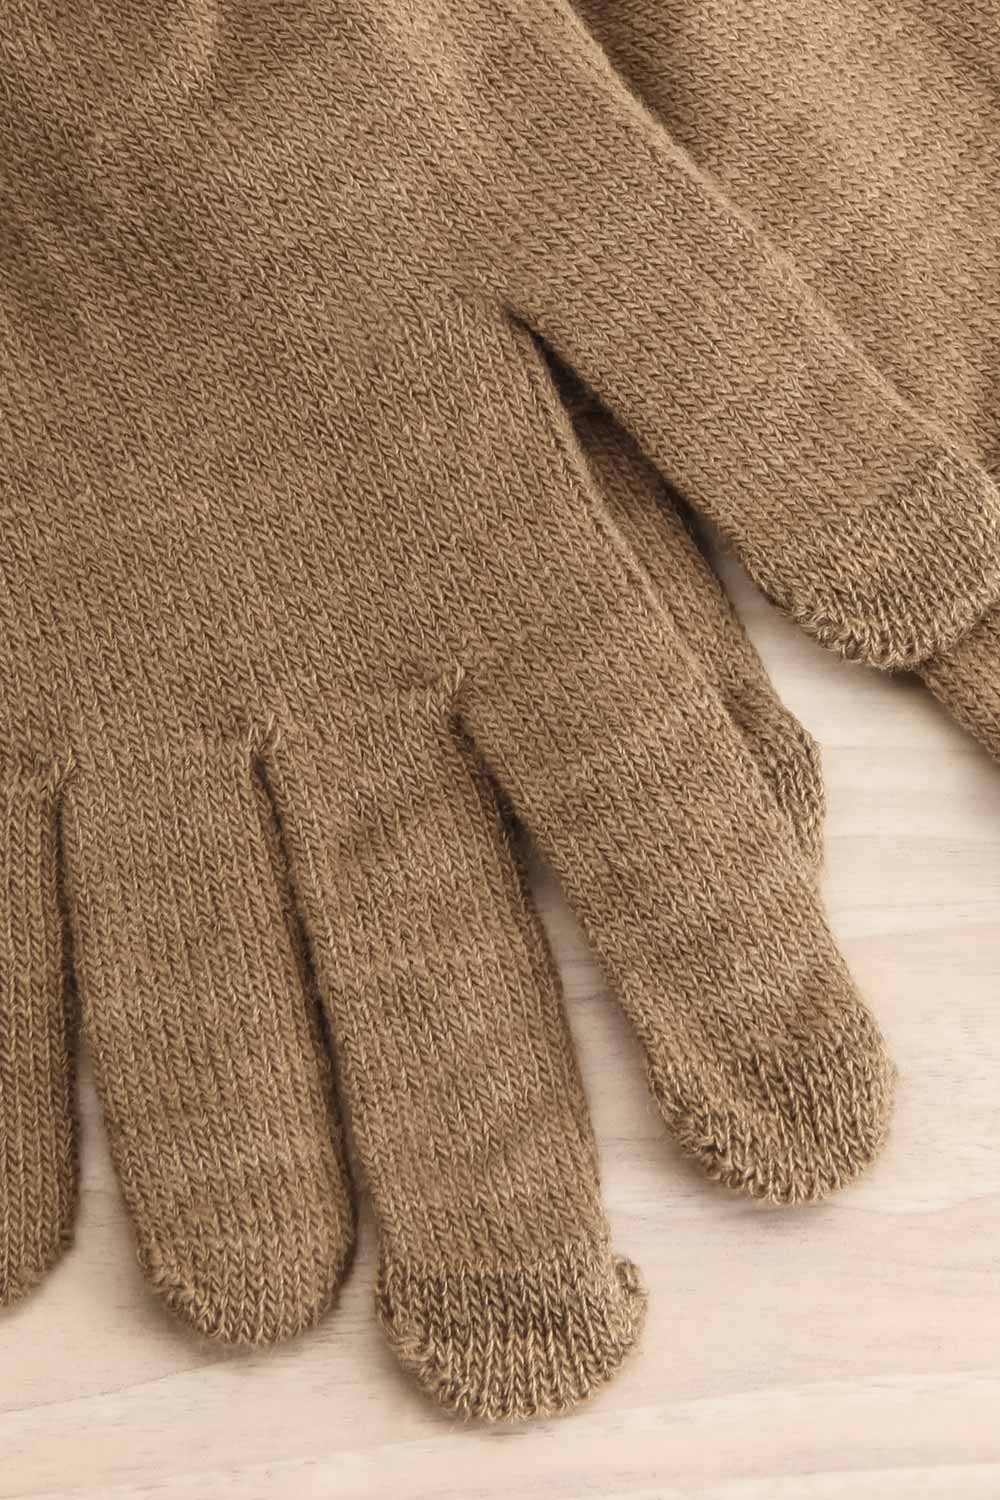 Volans Khaki Finger Gloves | La petite garçonne close-up